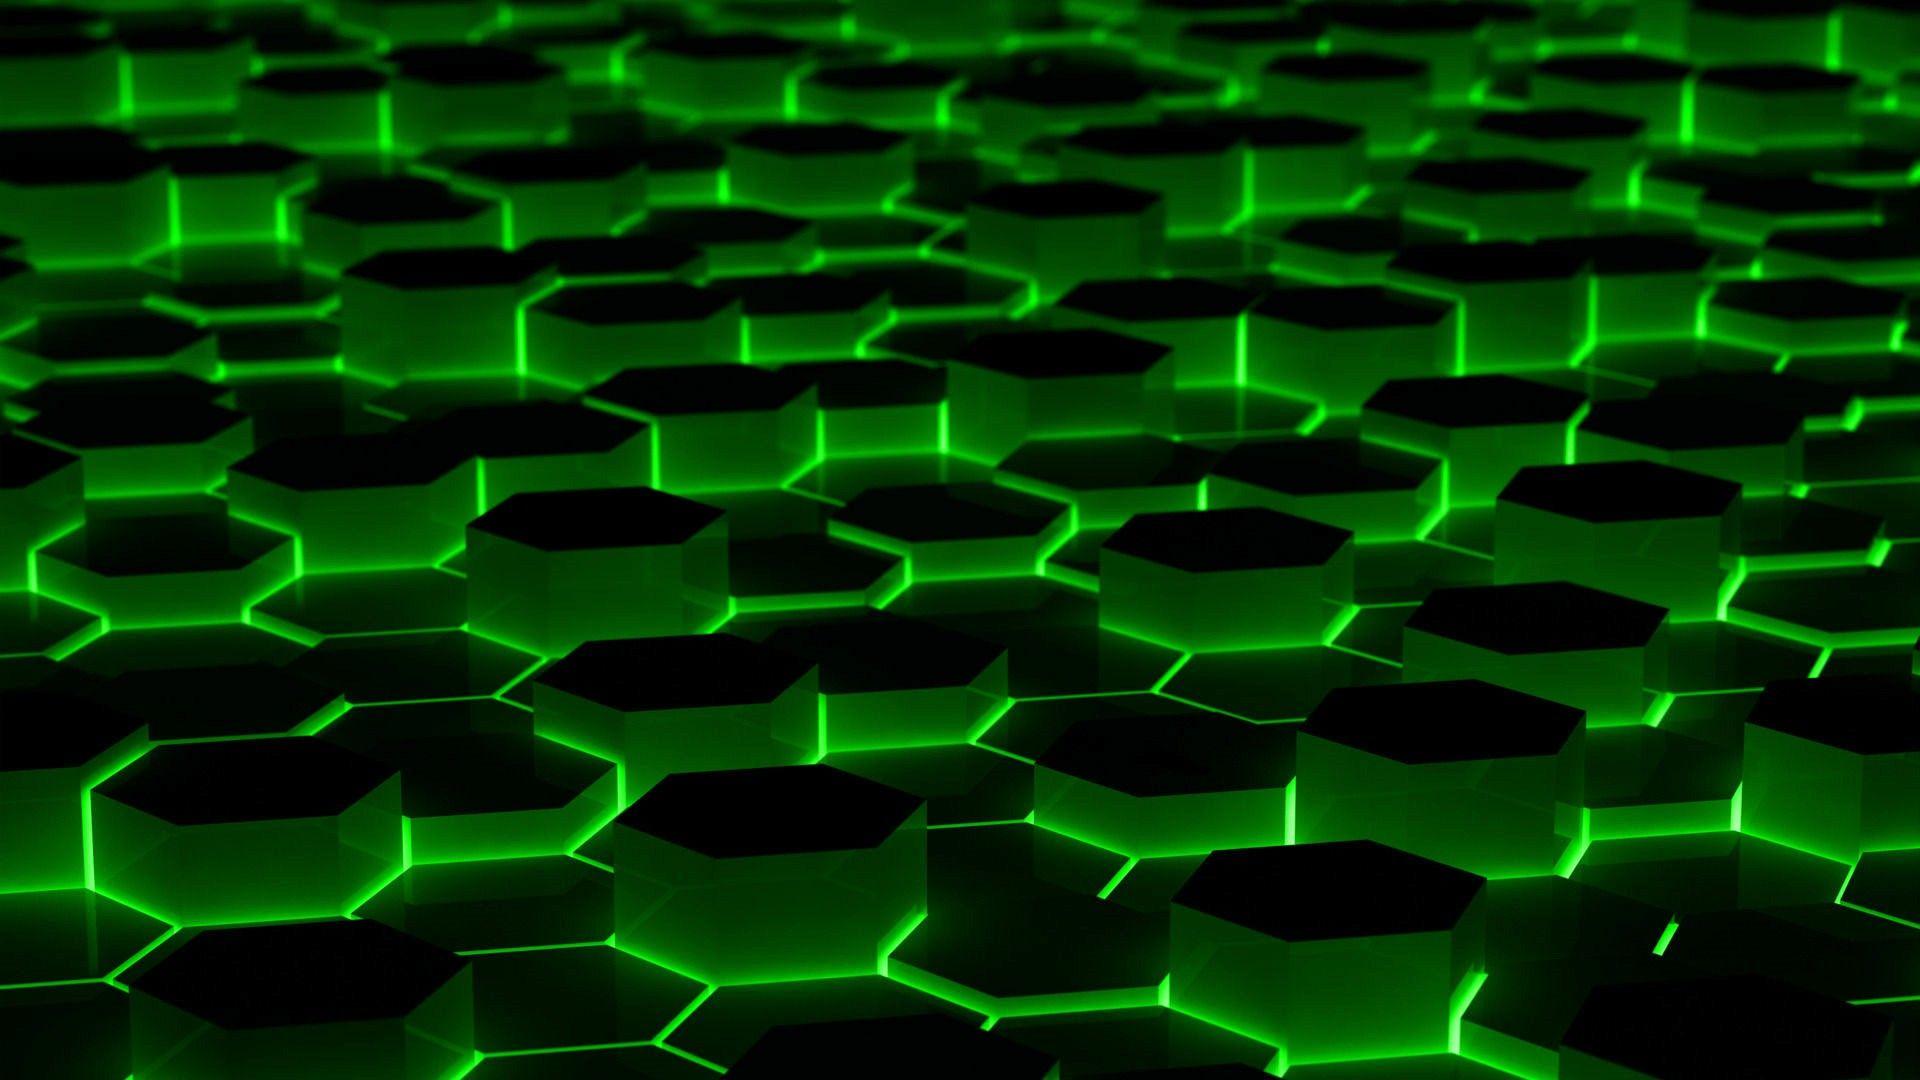 Bạn đang tìm kiếm những hình nền máy tính ấn tượng với màu Neon Green, phù hợp với sở thích của mình? Hãy ghé thăm để cập nhật ngay rất nhiều hình nền Desktop Wallpapers độc đáo trong phong cách Neon Green Aesthetic nhé.